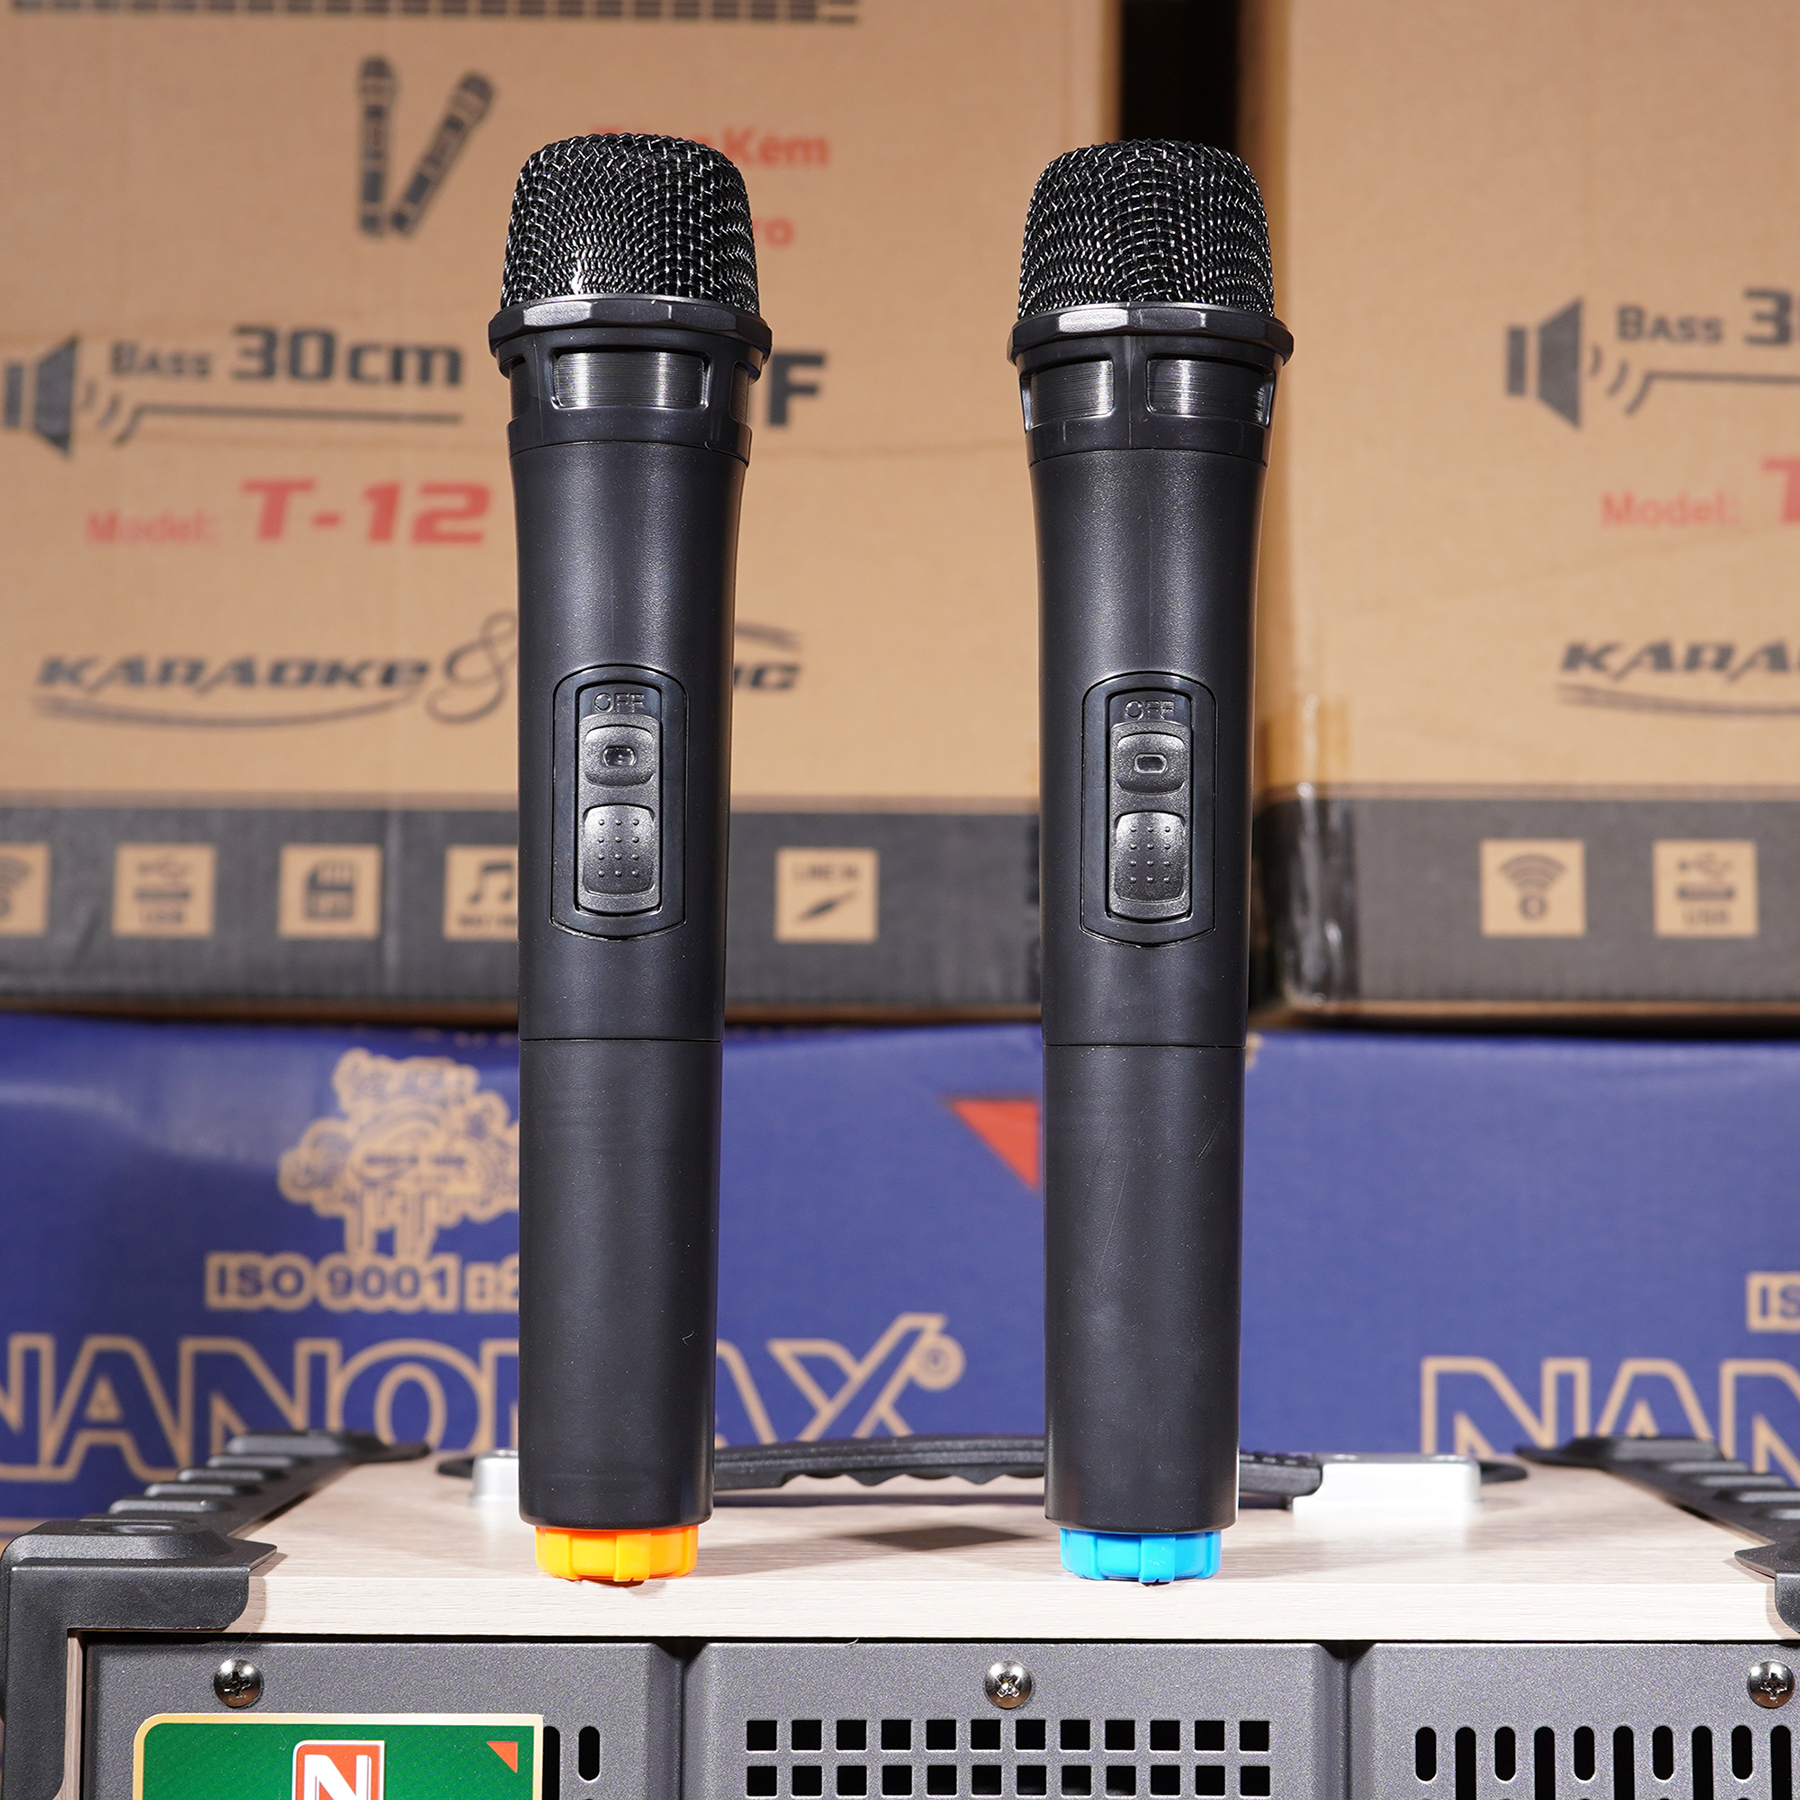 Loa Kéo Karaoke Mini Nanomax T-12 Bass 3 Tấc 30cm Công Suất 260W Màu Xám Có Đọc USB Thẻ Nhớ Hàng Chính Hãng